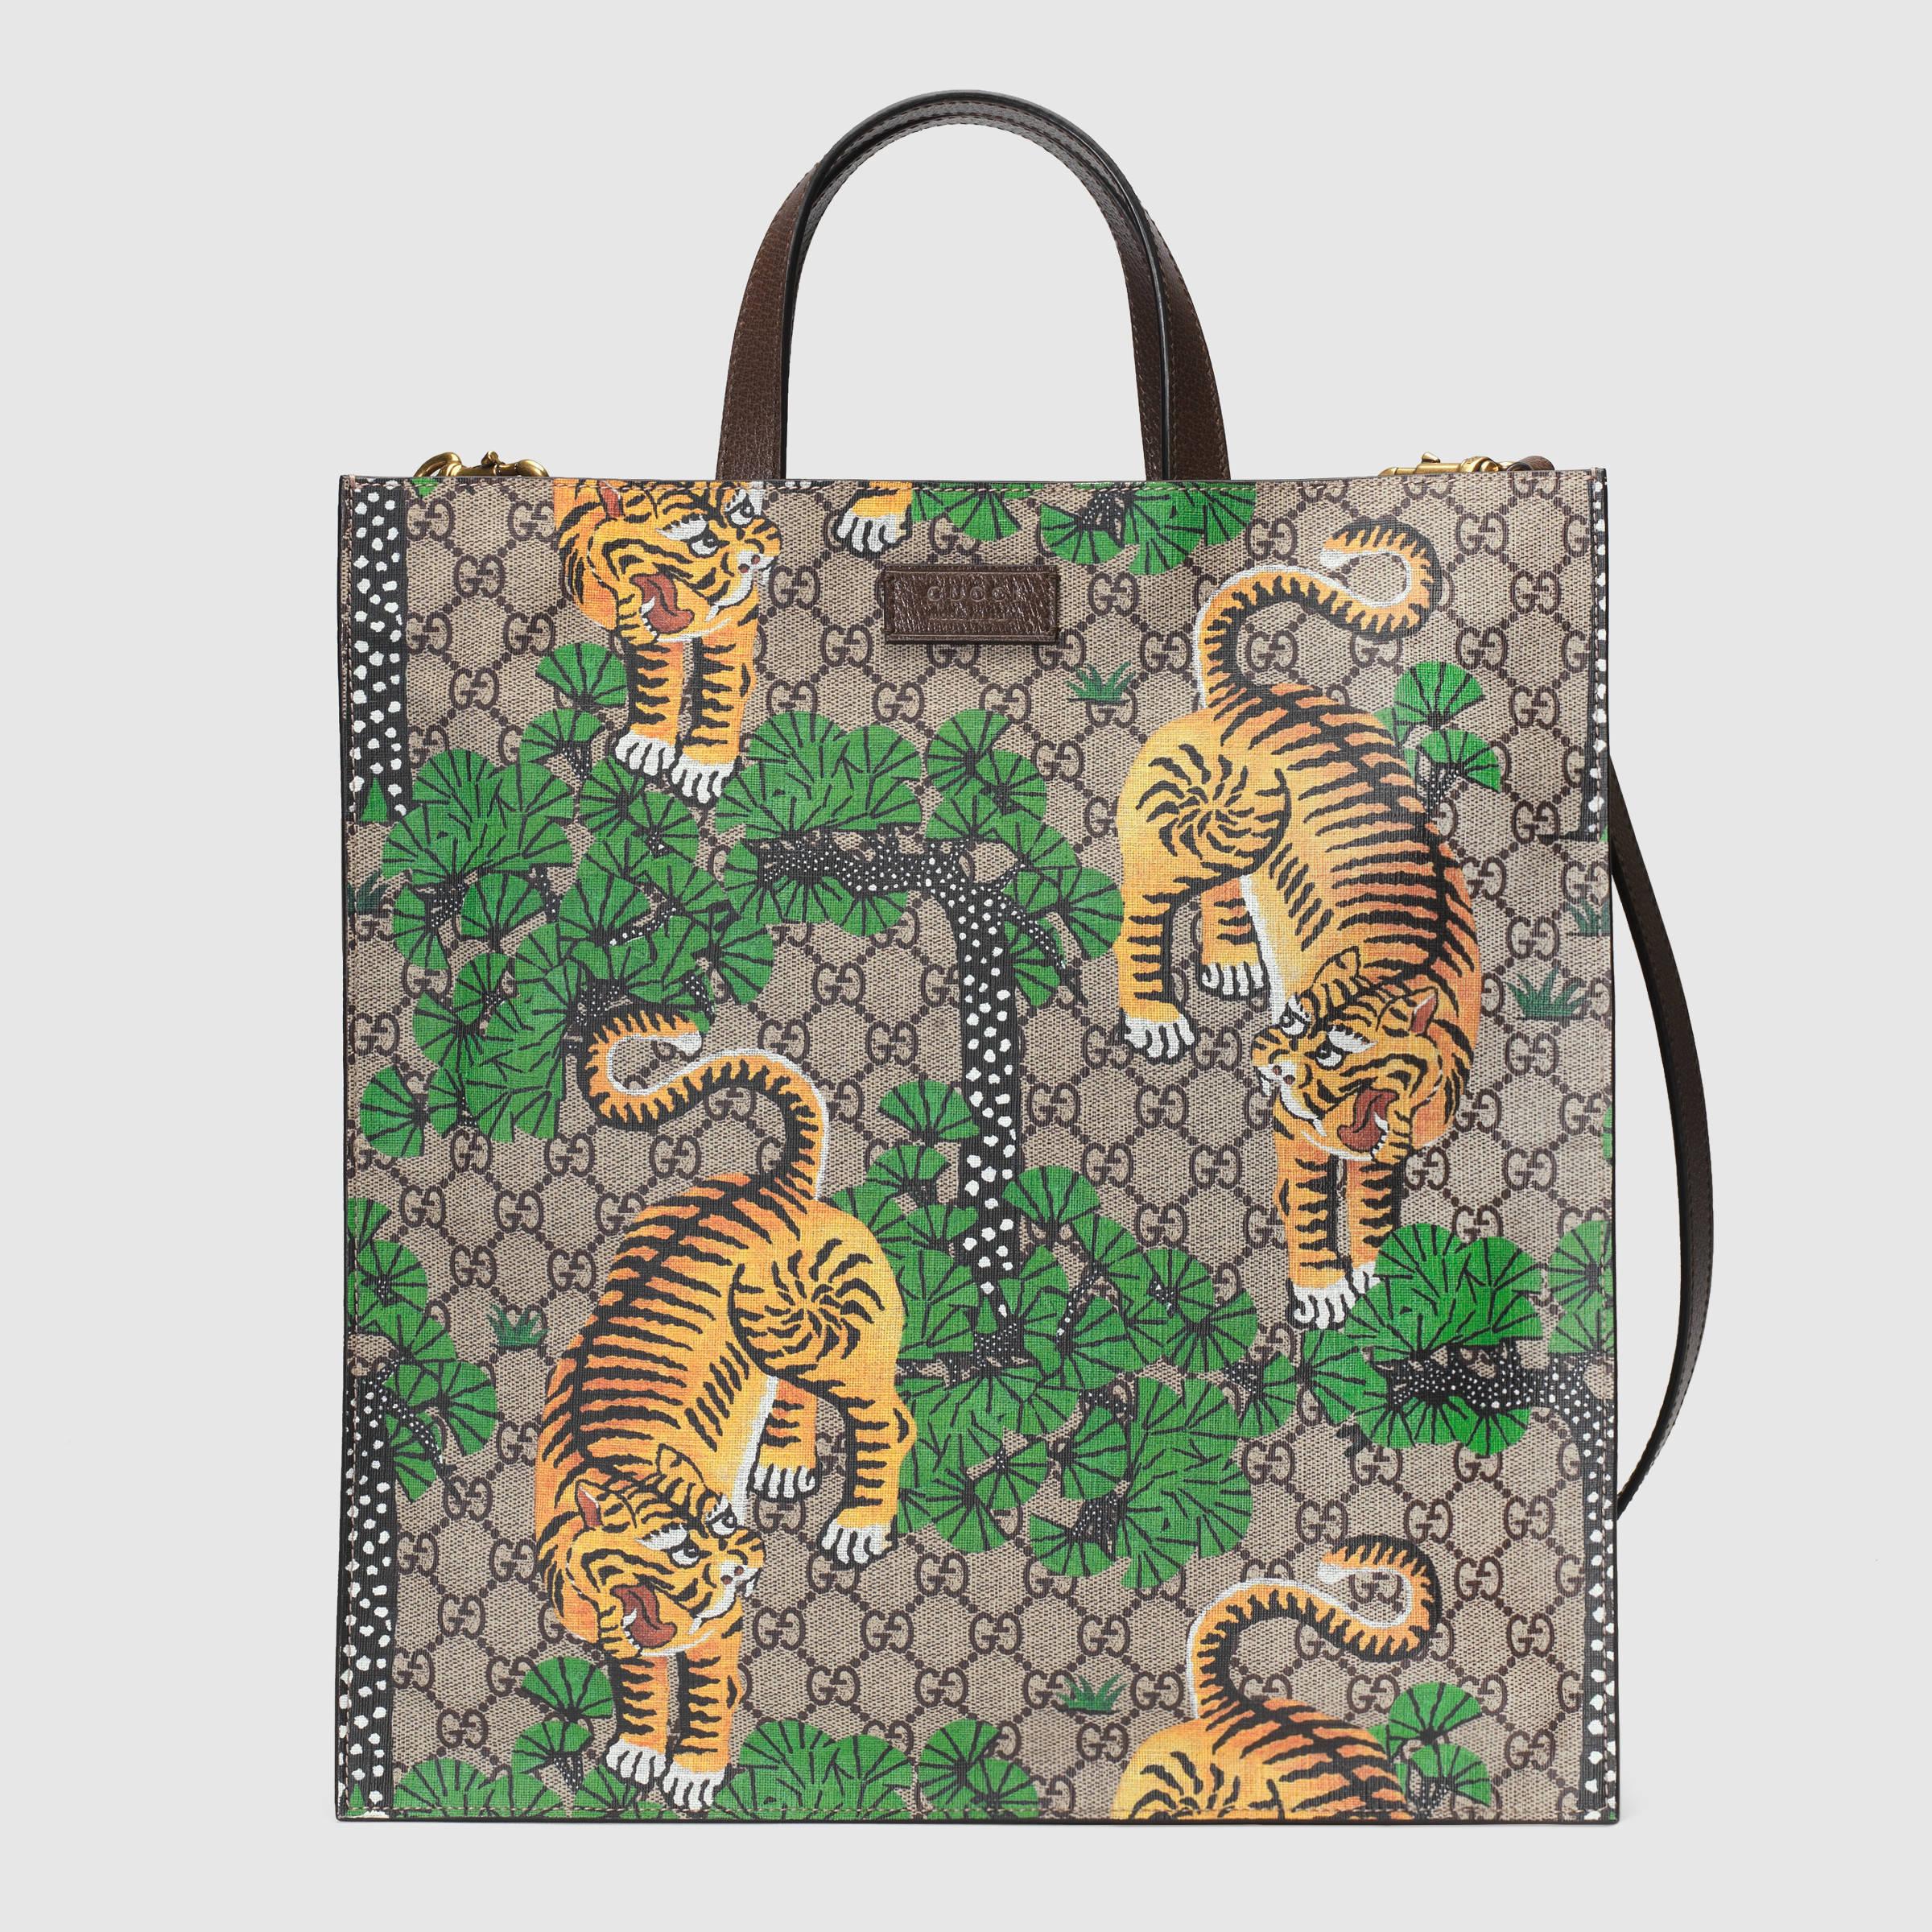 Gucci Bengal Tiger Handbag Images | semashow.com